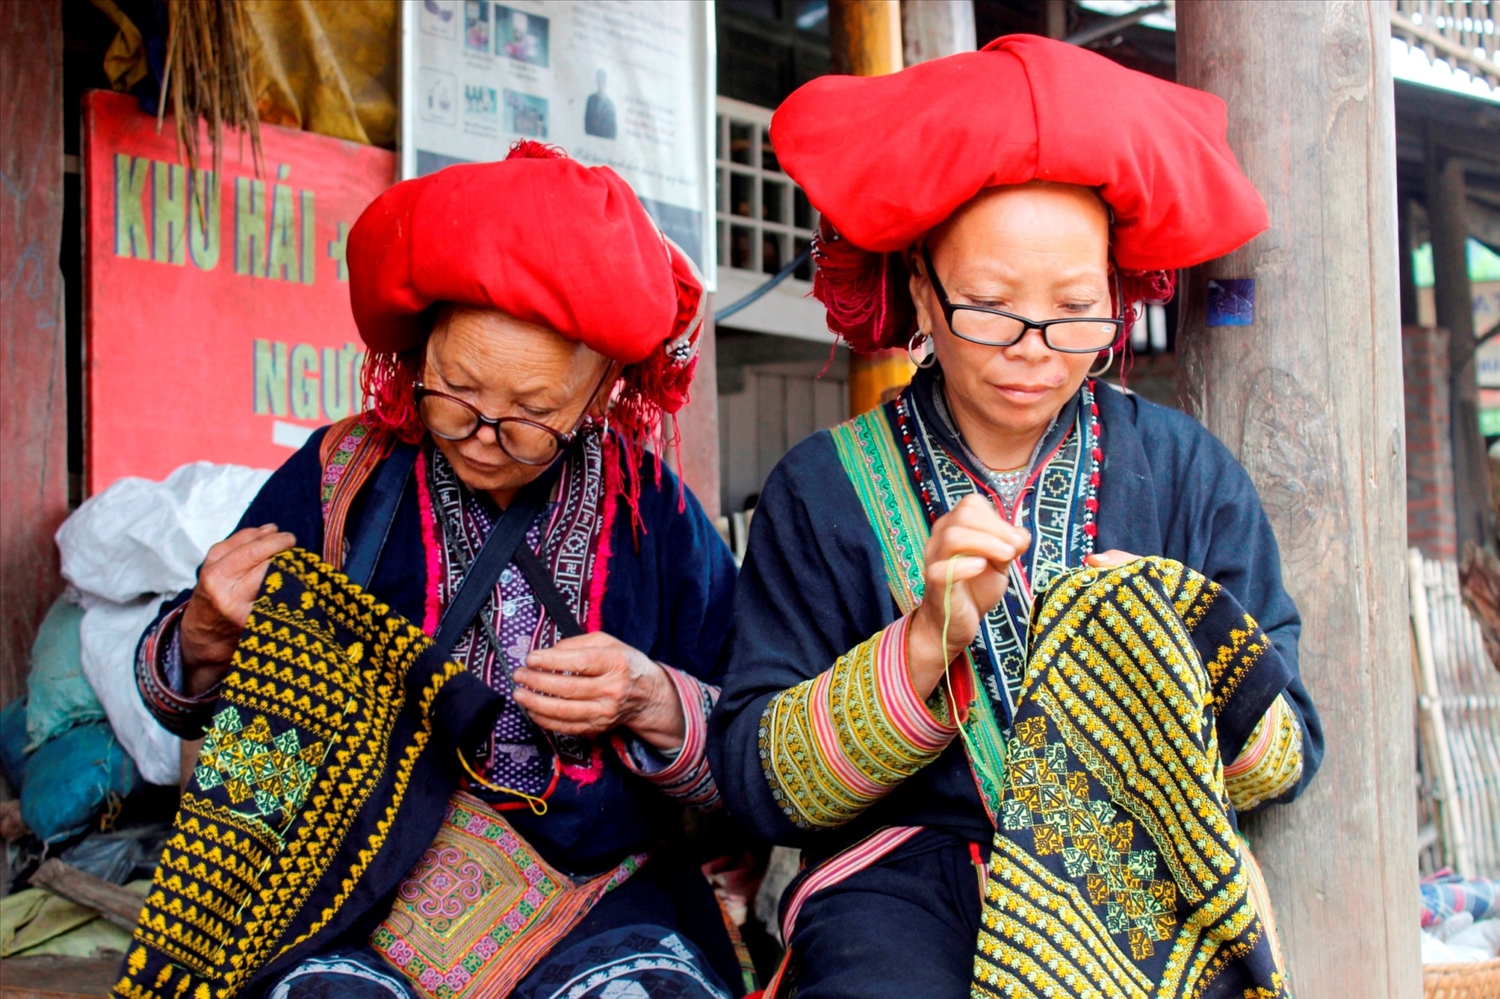 Từ đôi bàn tay khéo léo và tri thức đời sống bản địa cùng những chất liệu vải lanh, chỉ tơ tằm, những sản phẩm của phụ nữ Dao được khách nước ngoài ưa chuộng - Ảnh: VGP/Lê Thanh Cường